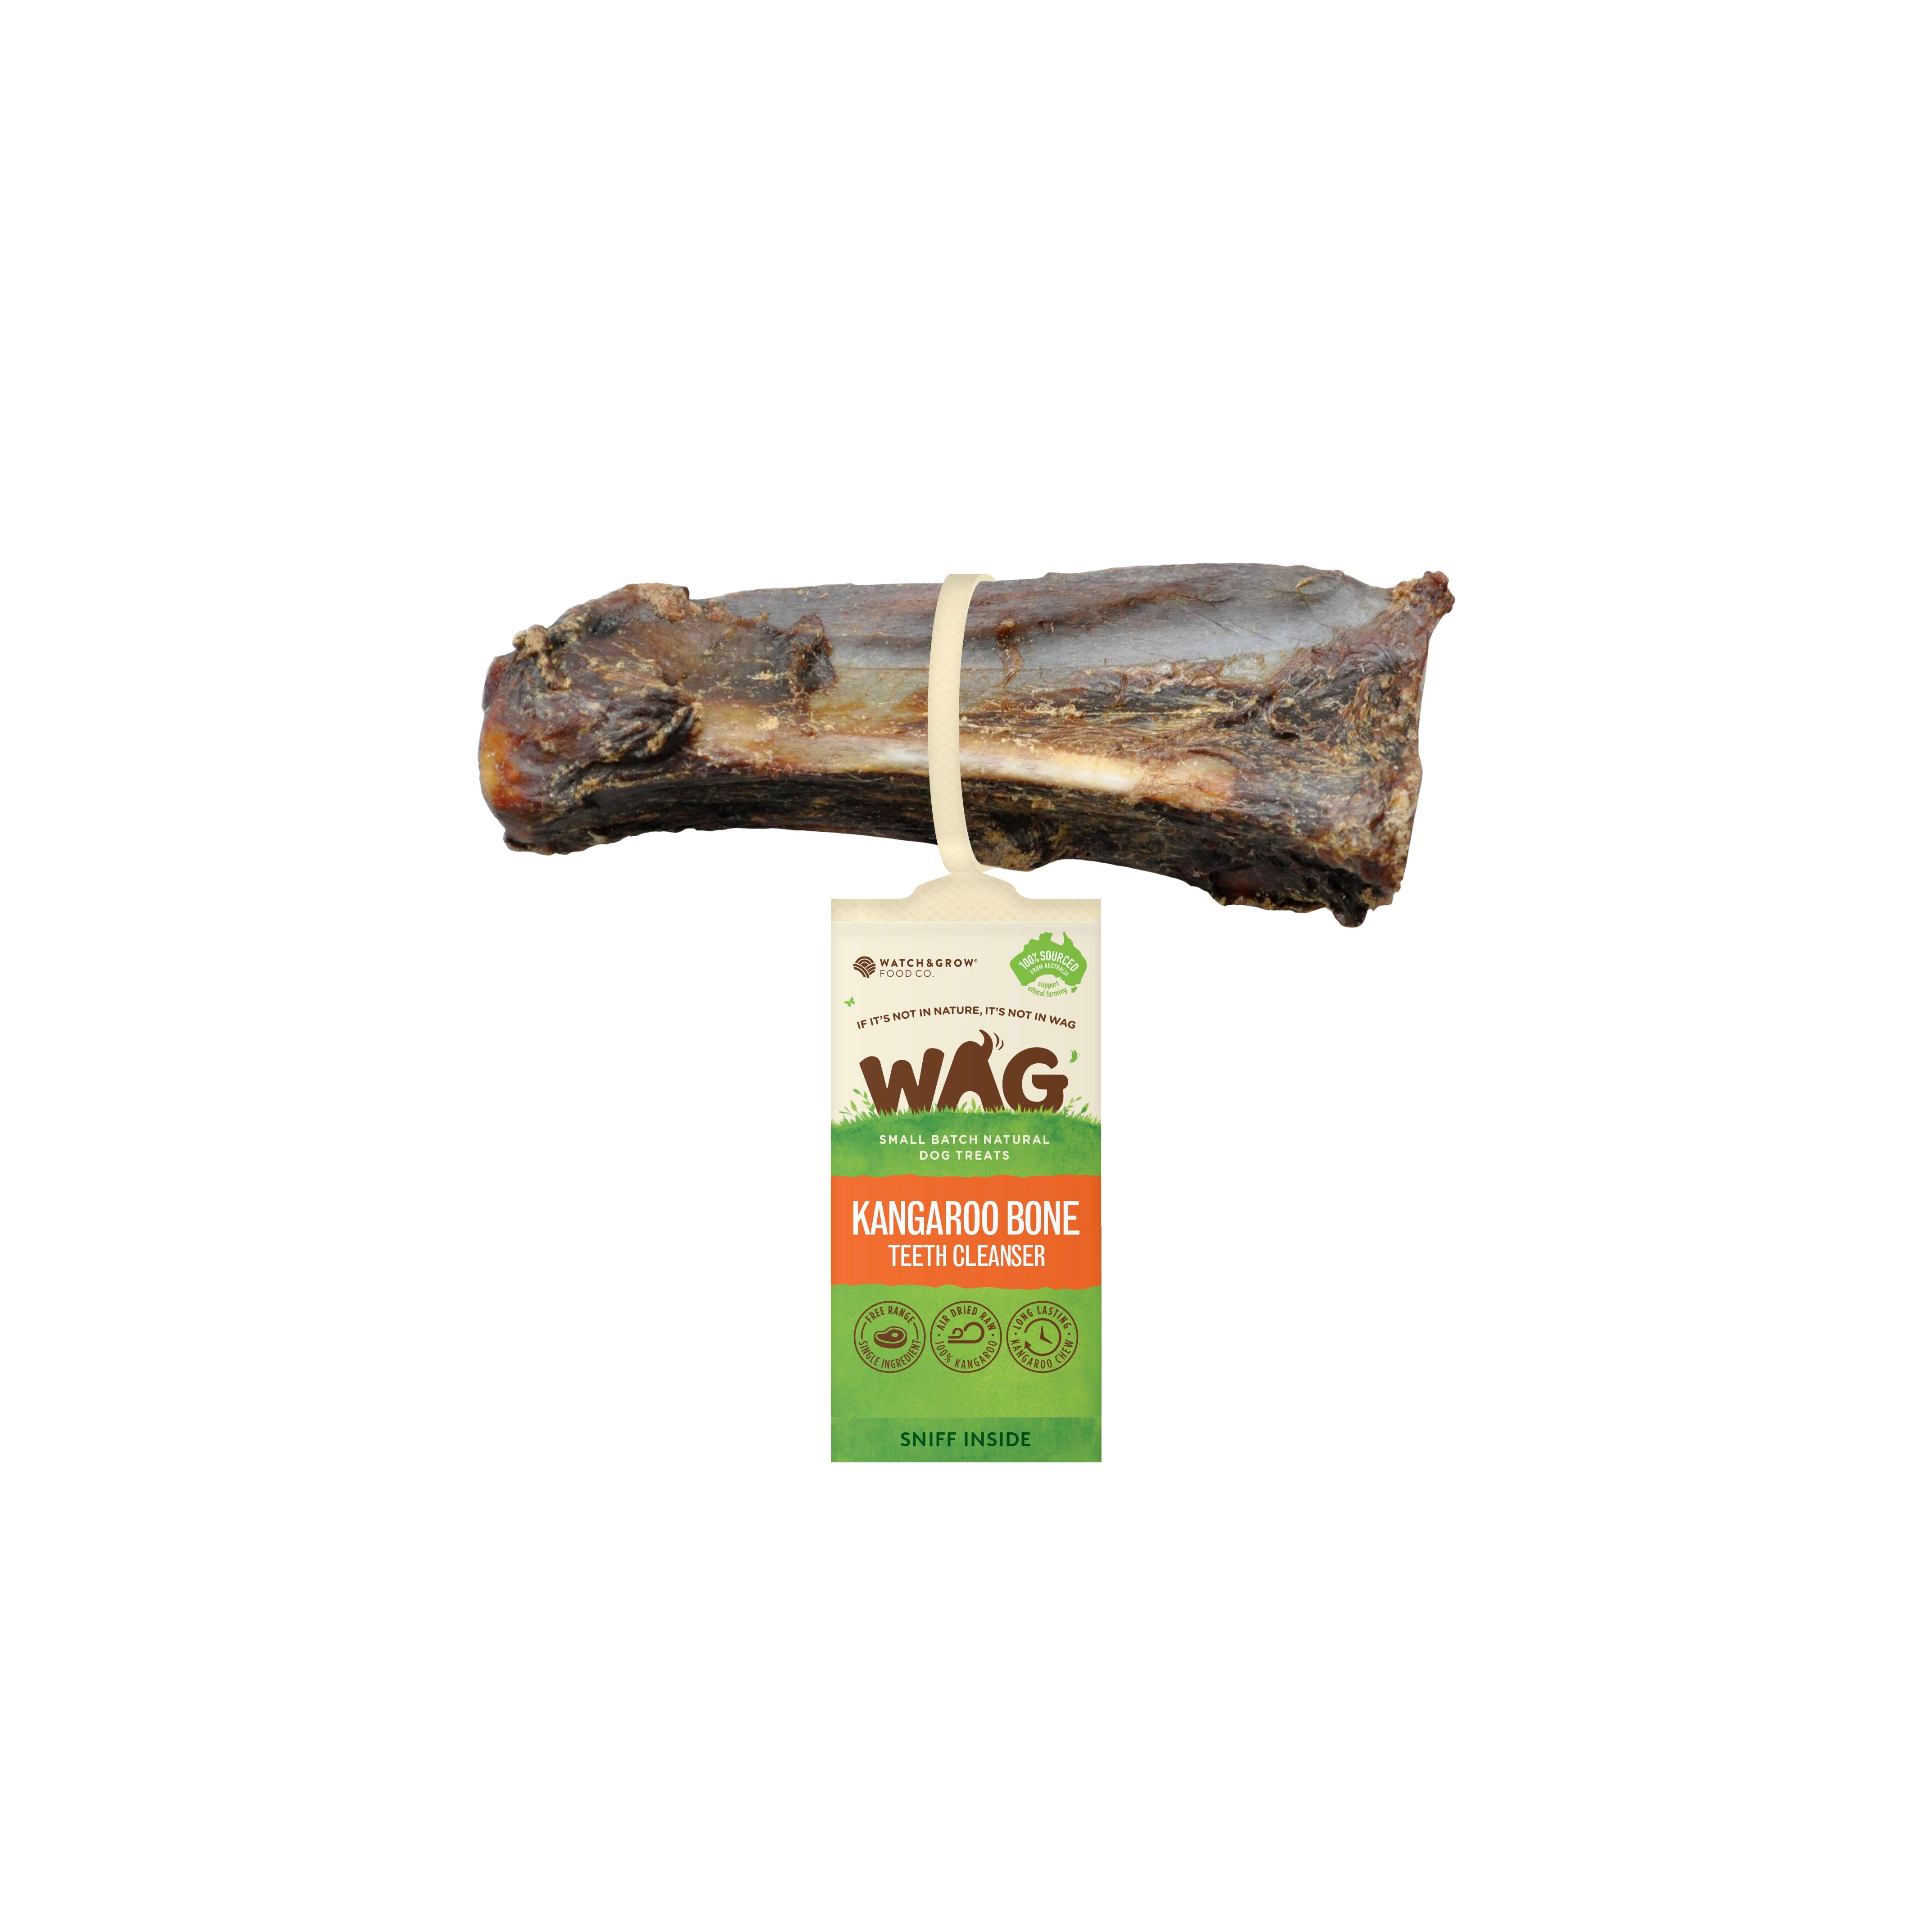 WAG Kangaroo Bone Teeth Cleanser